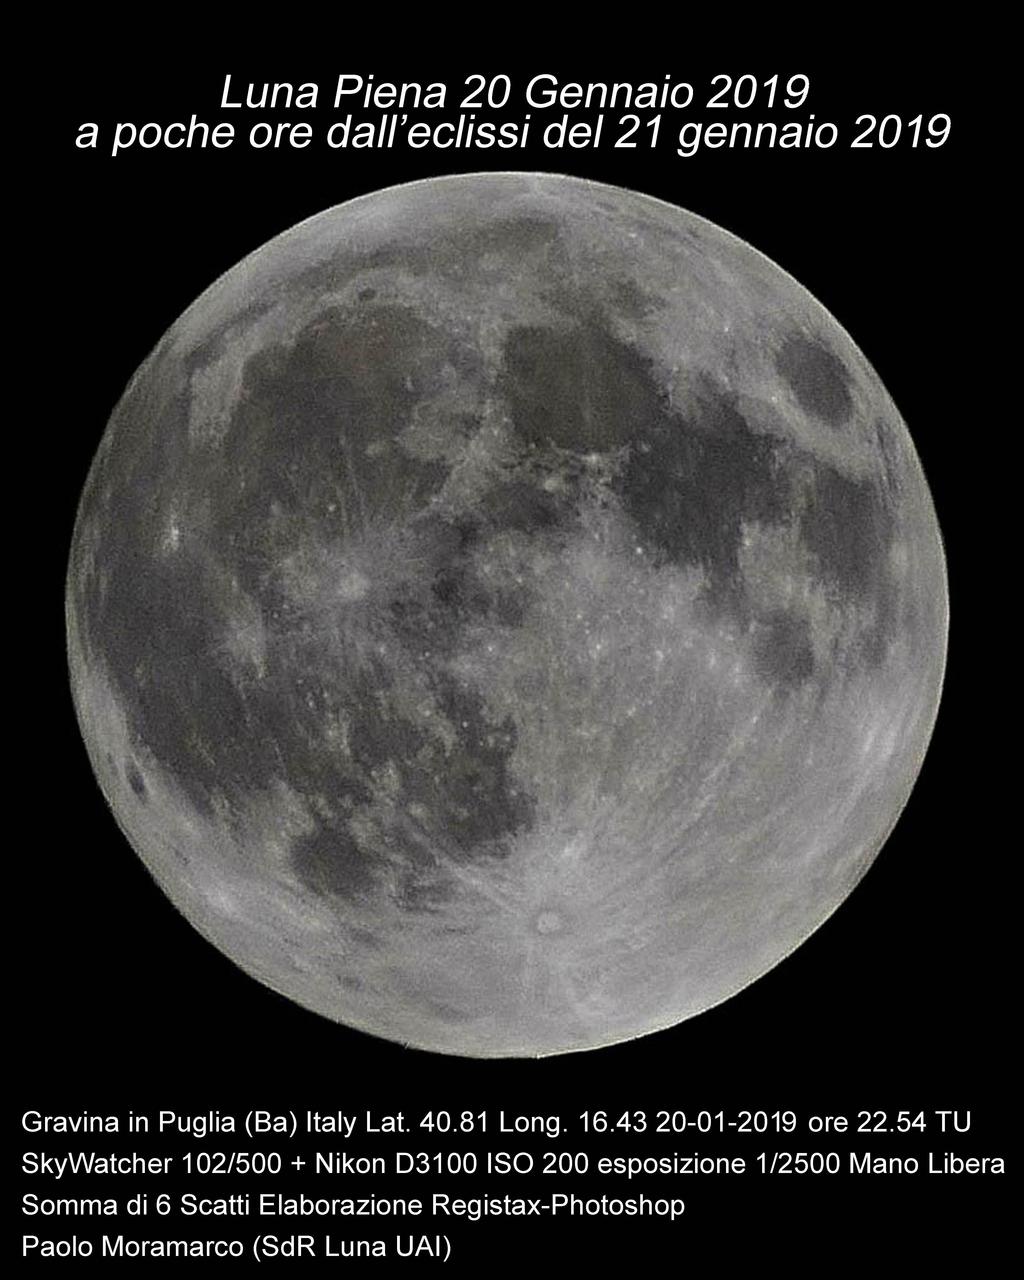 Lunar Geological Change Detection & Transient Lunar Phenomena Luna Piena 20 gennaio 2019 20-01-2019 Alle 22:54 T.U.